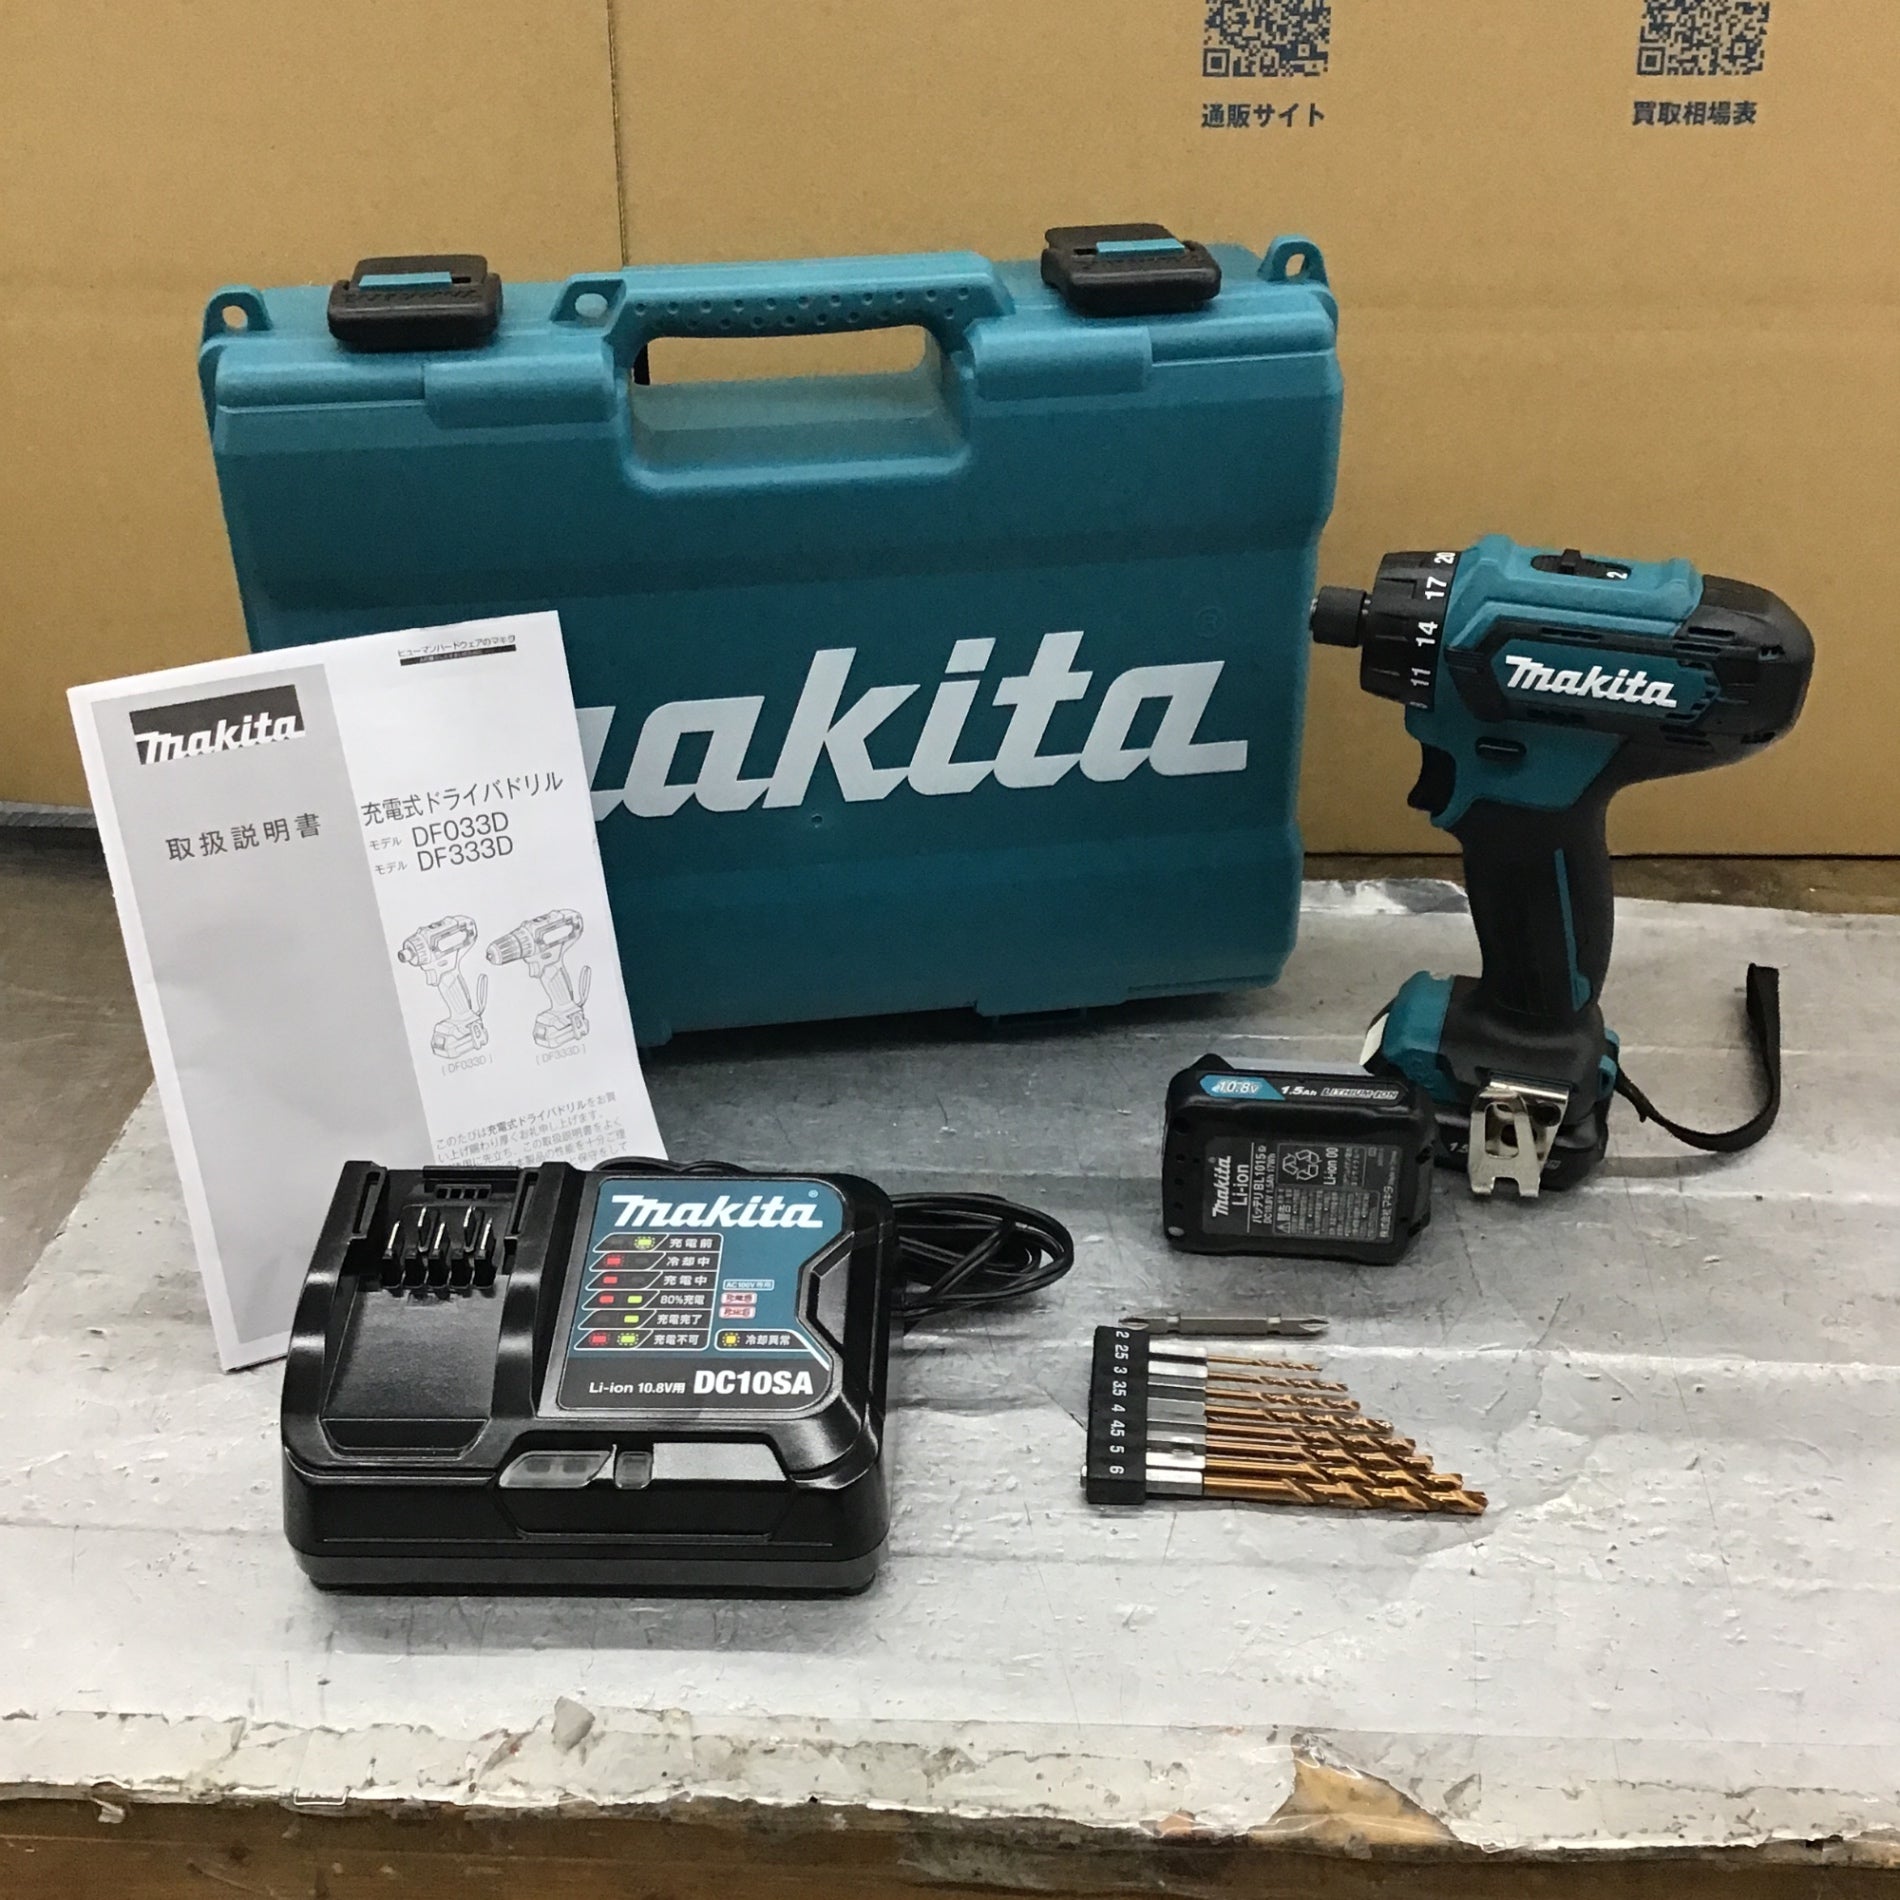 マキタ 充電式ドリルドライバ DF033DSHX - 工具、DIY用品